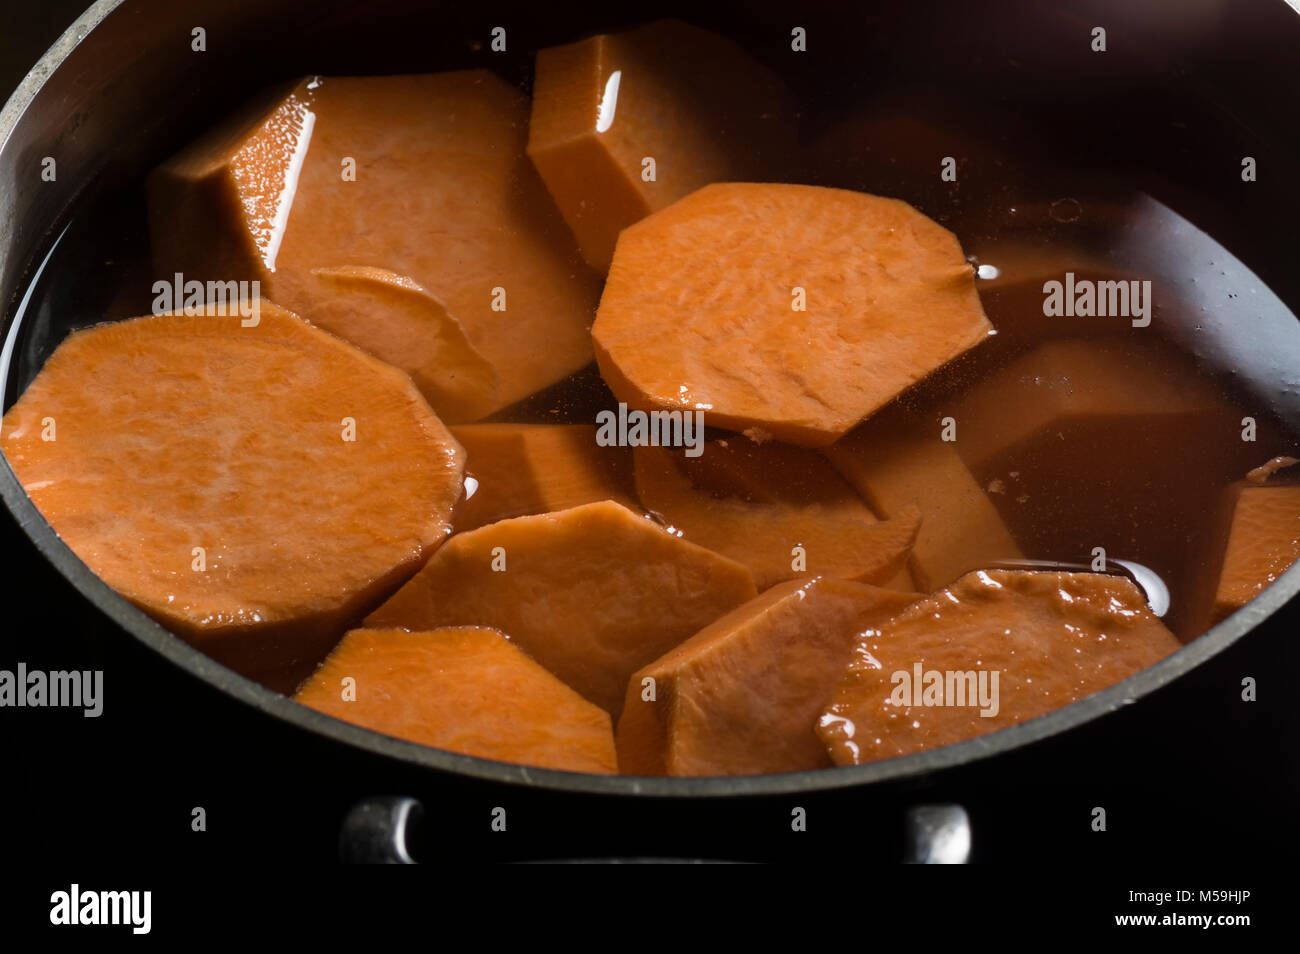 Morceaux d'igname ou de patates douces dans une marmite bouillante Banque D'Images